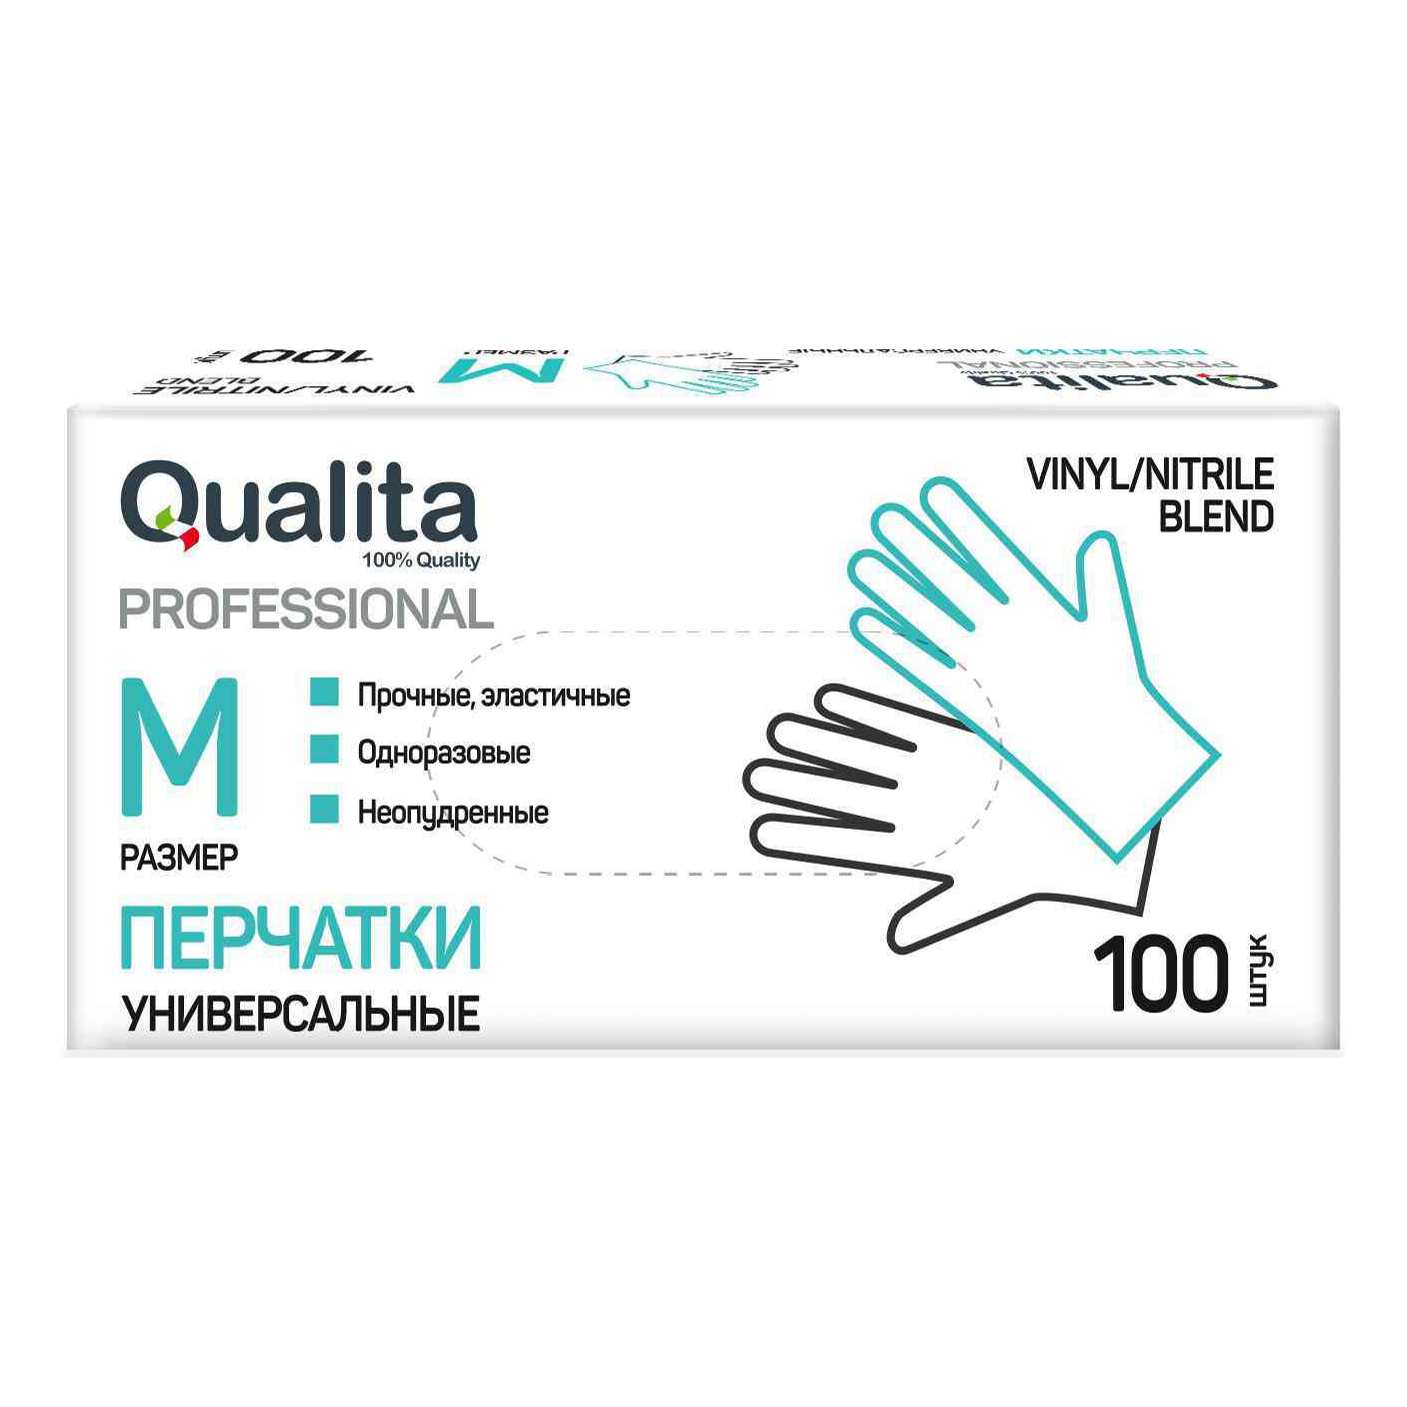 Перчатки Qualita хозяйственные, размер M, 100 шт.